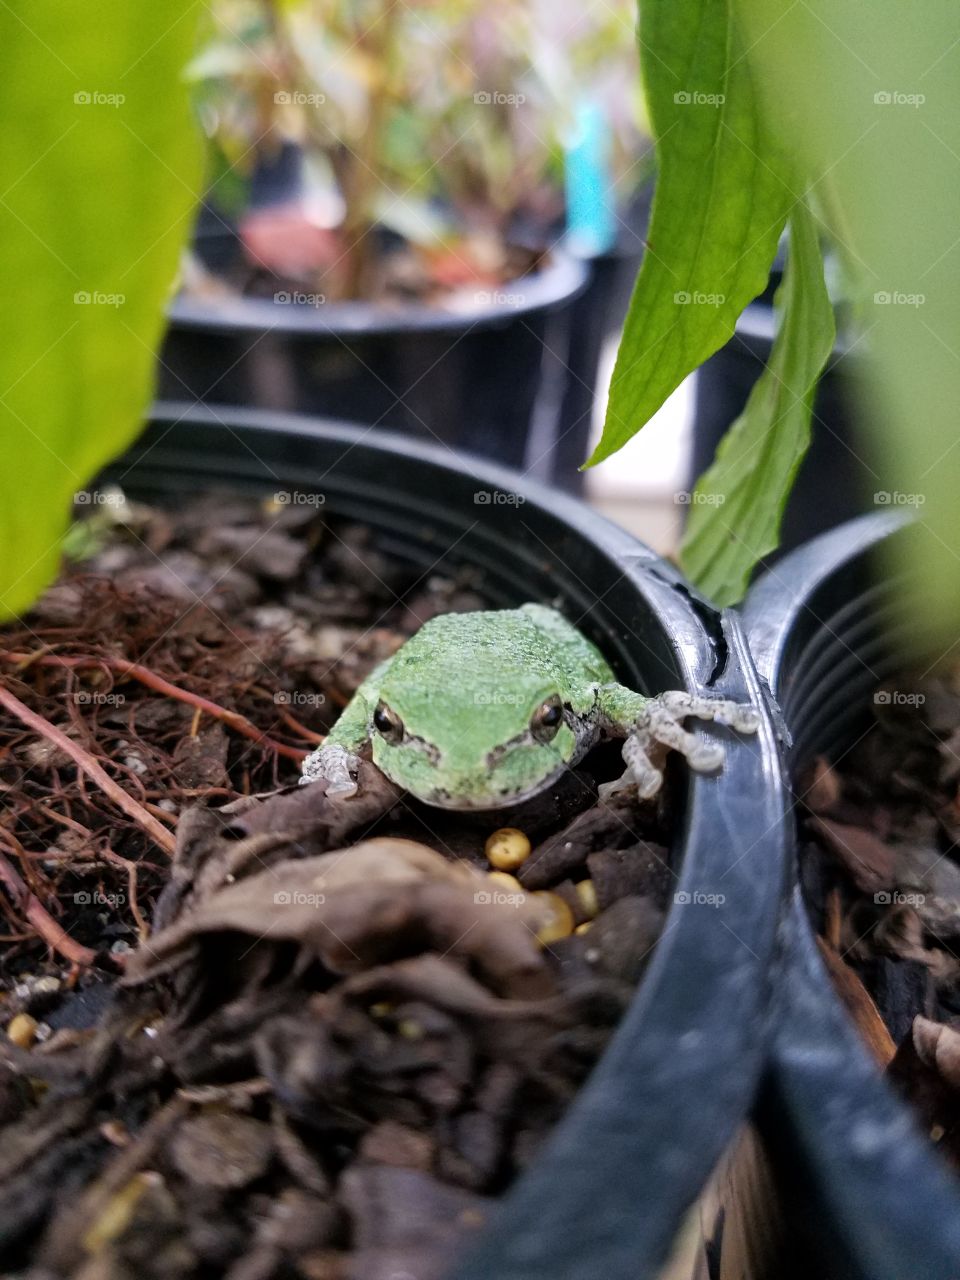 Little Tree Frog